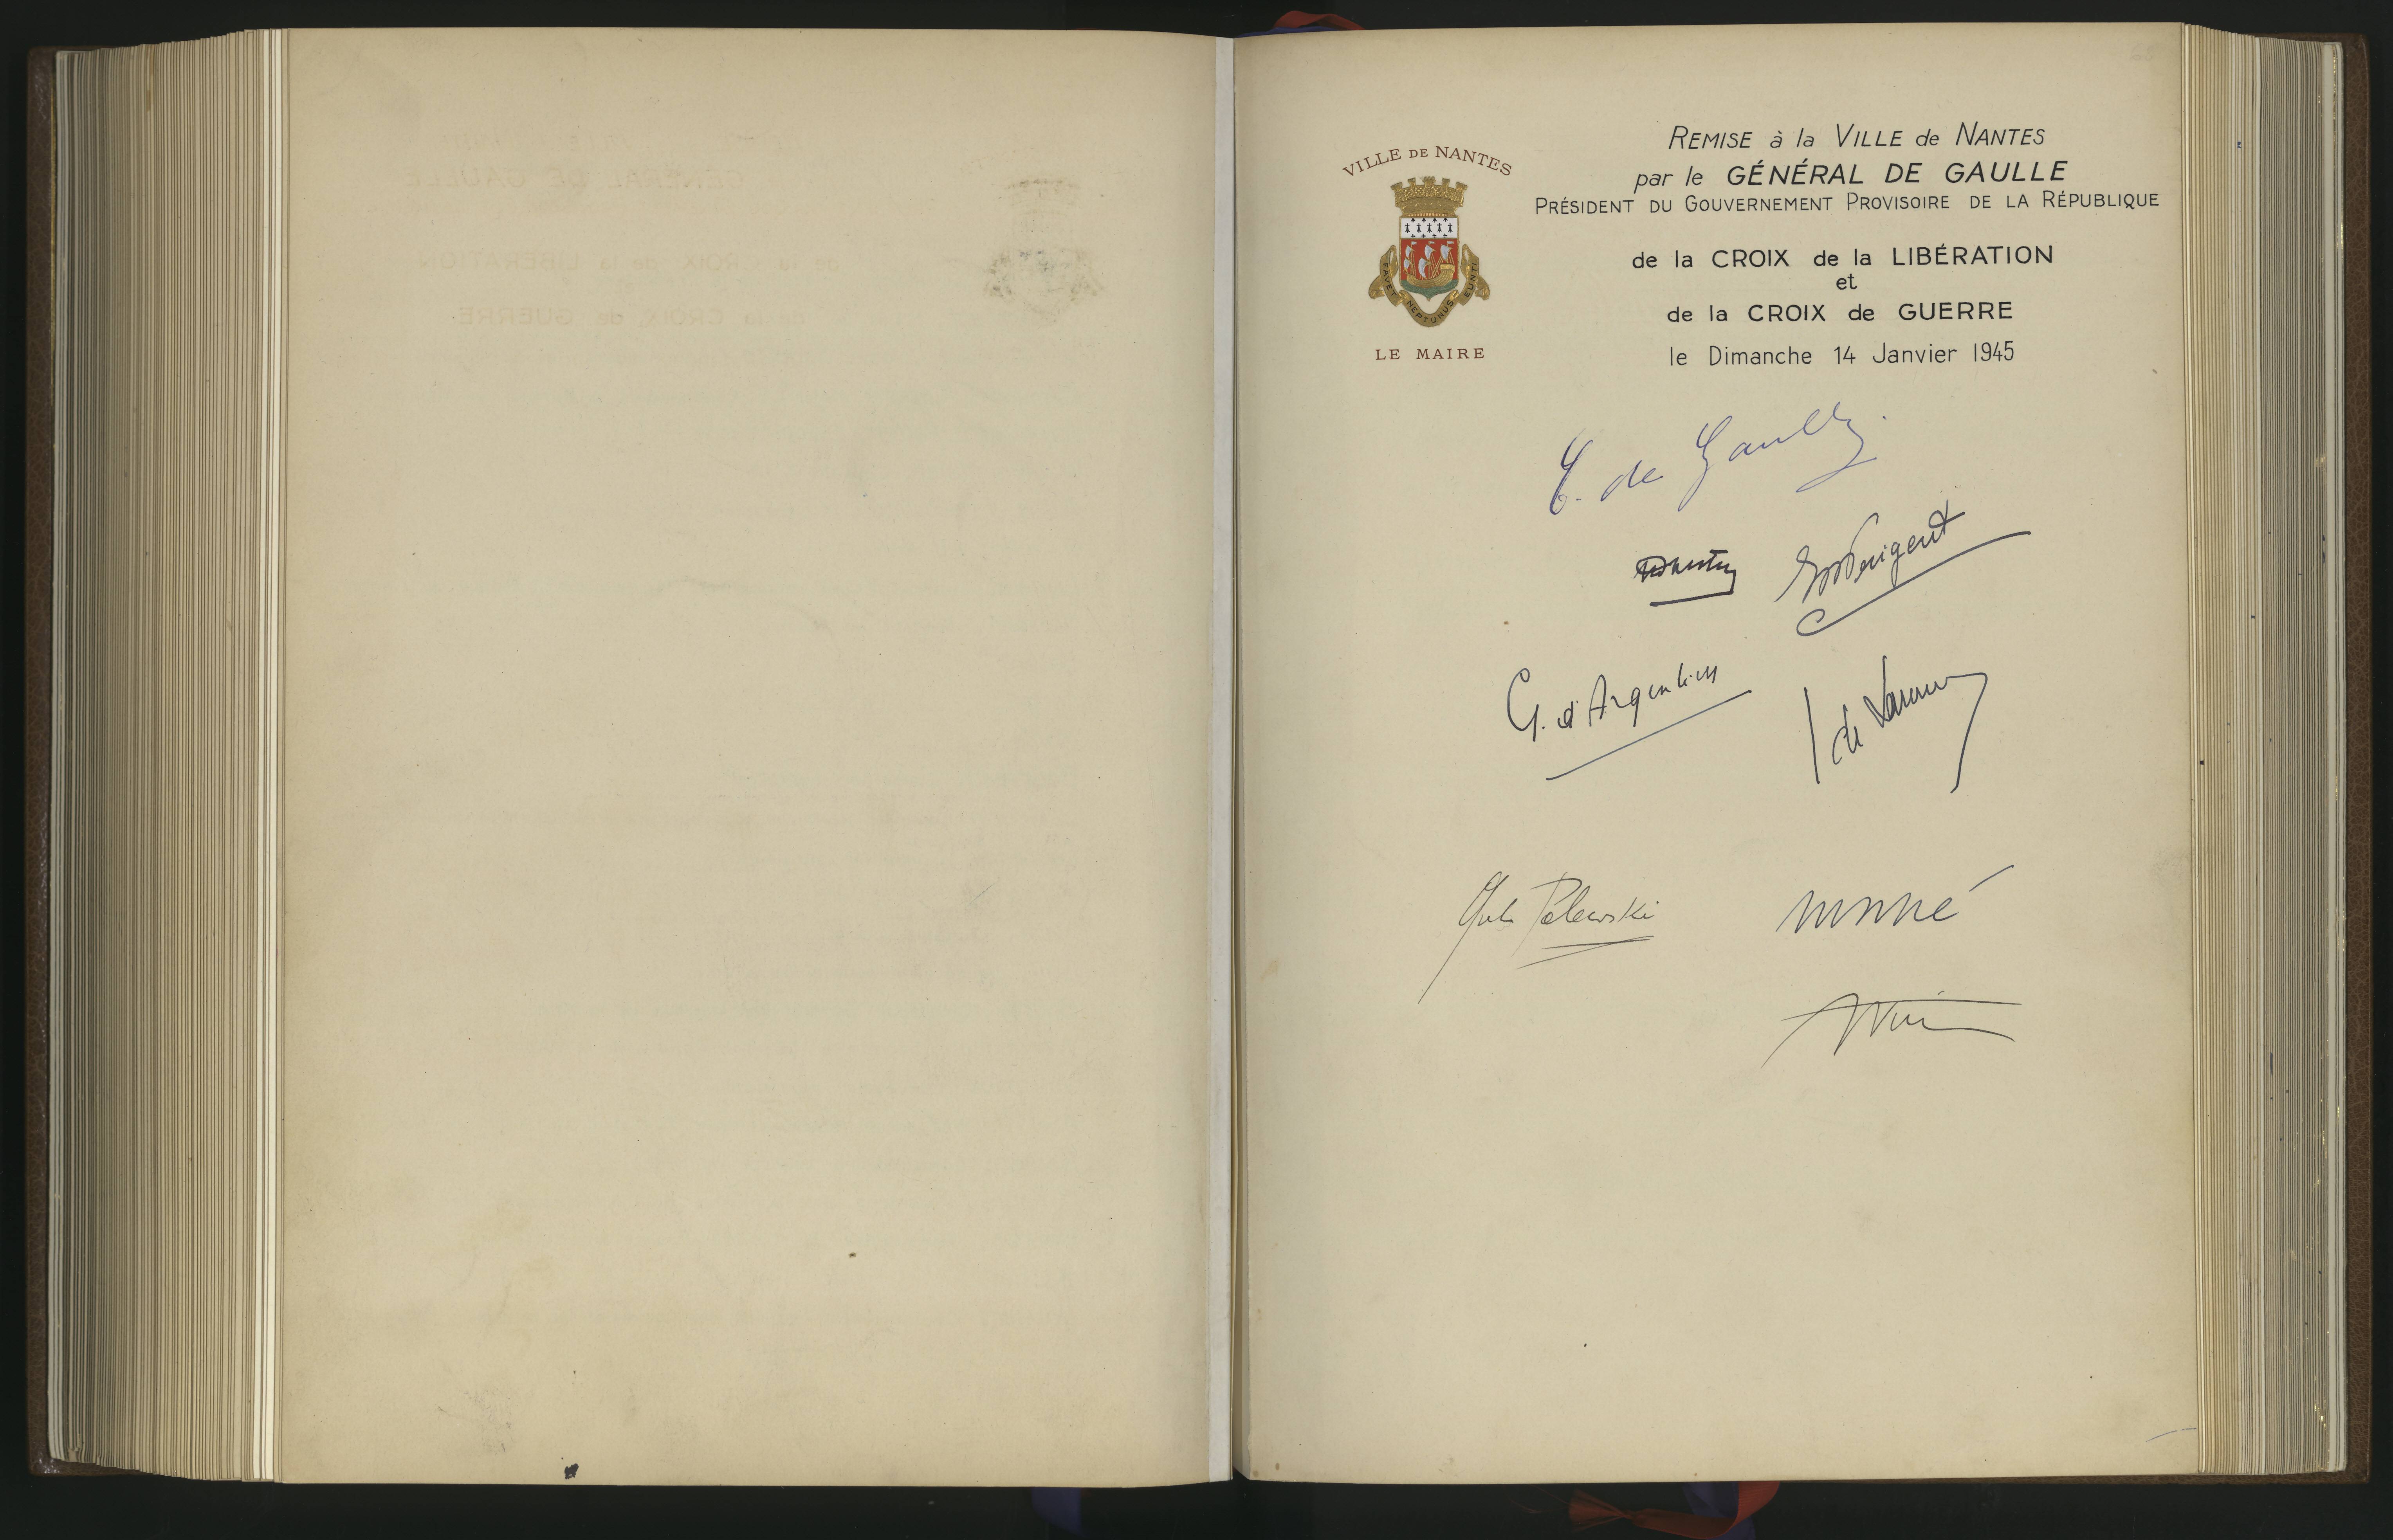 Page extraite du Livre d'or de la Ville de Nantes, portant la signature de Charles de Gaulle le 14 janvier 1945 (1597W)